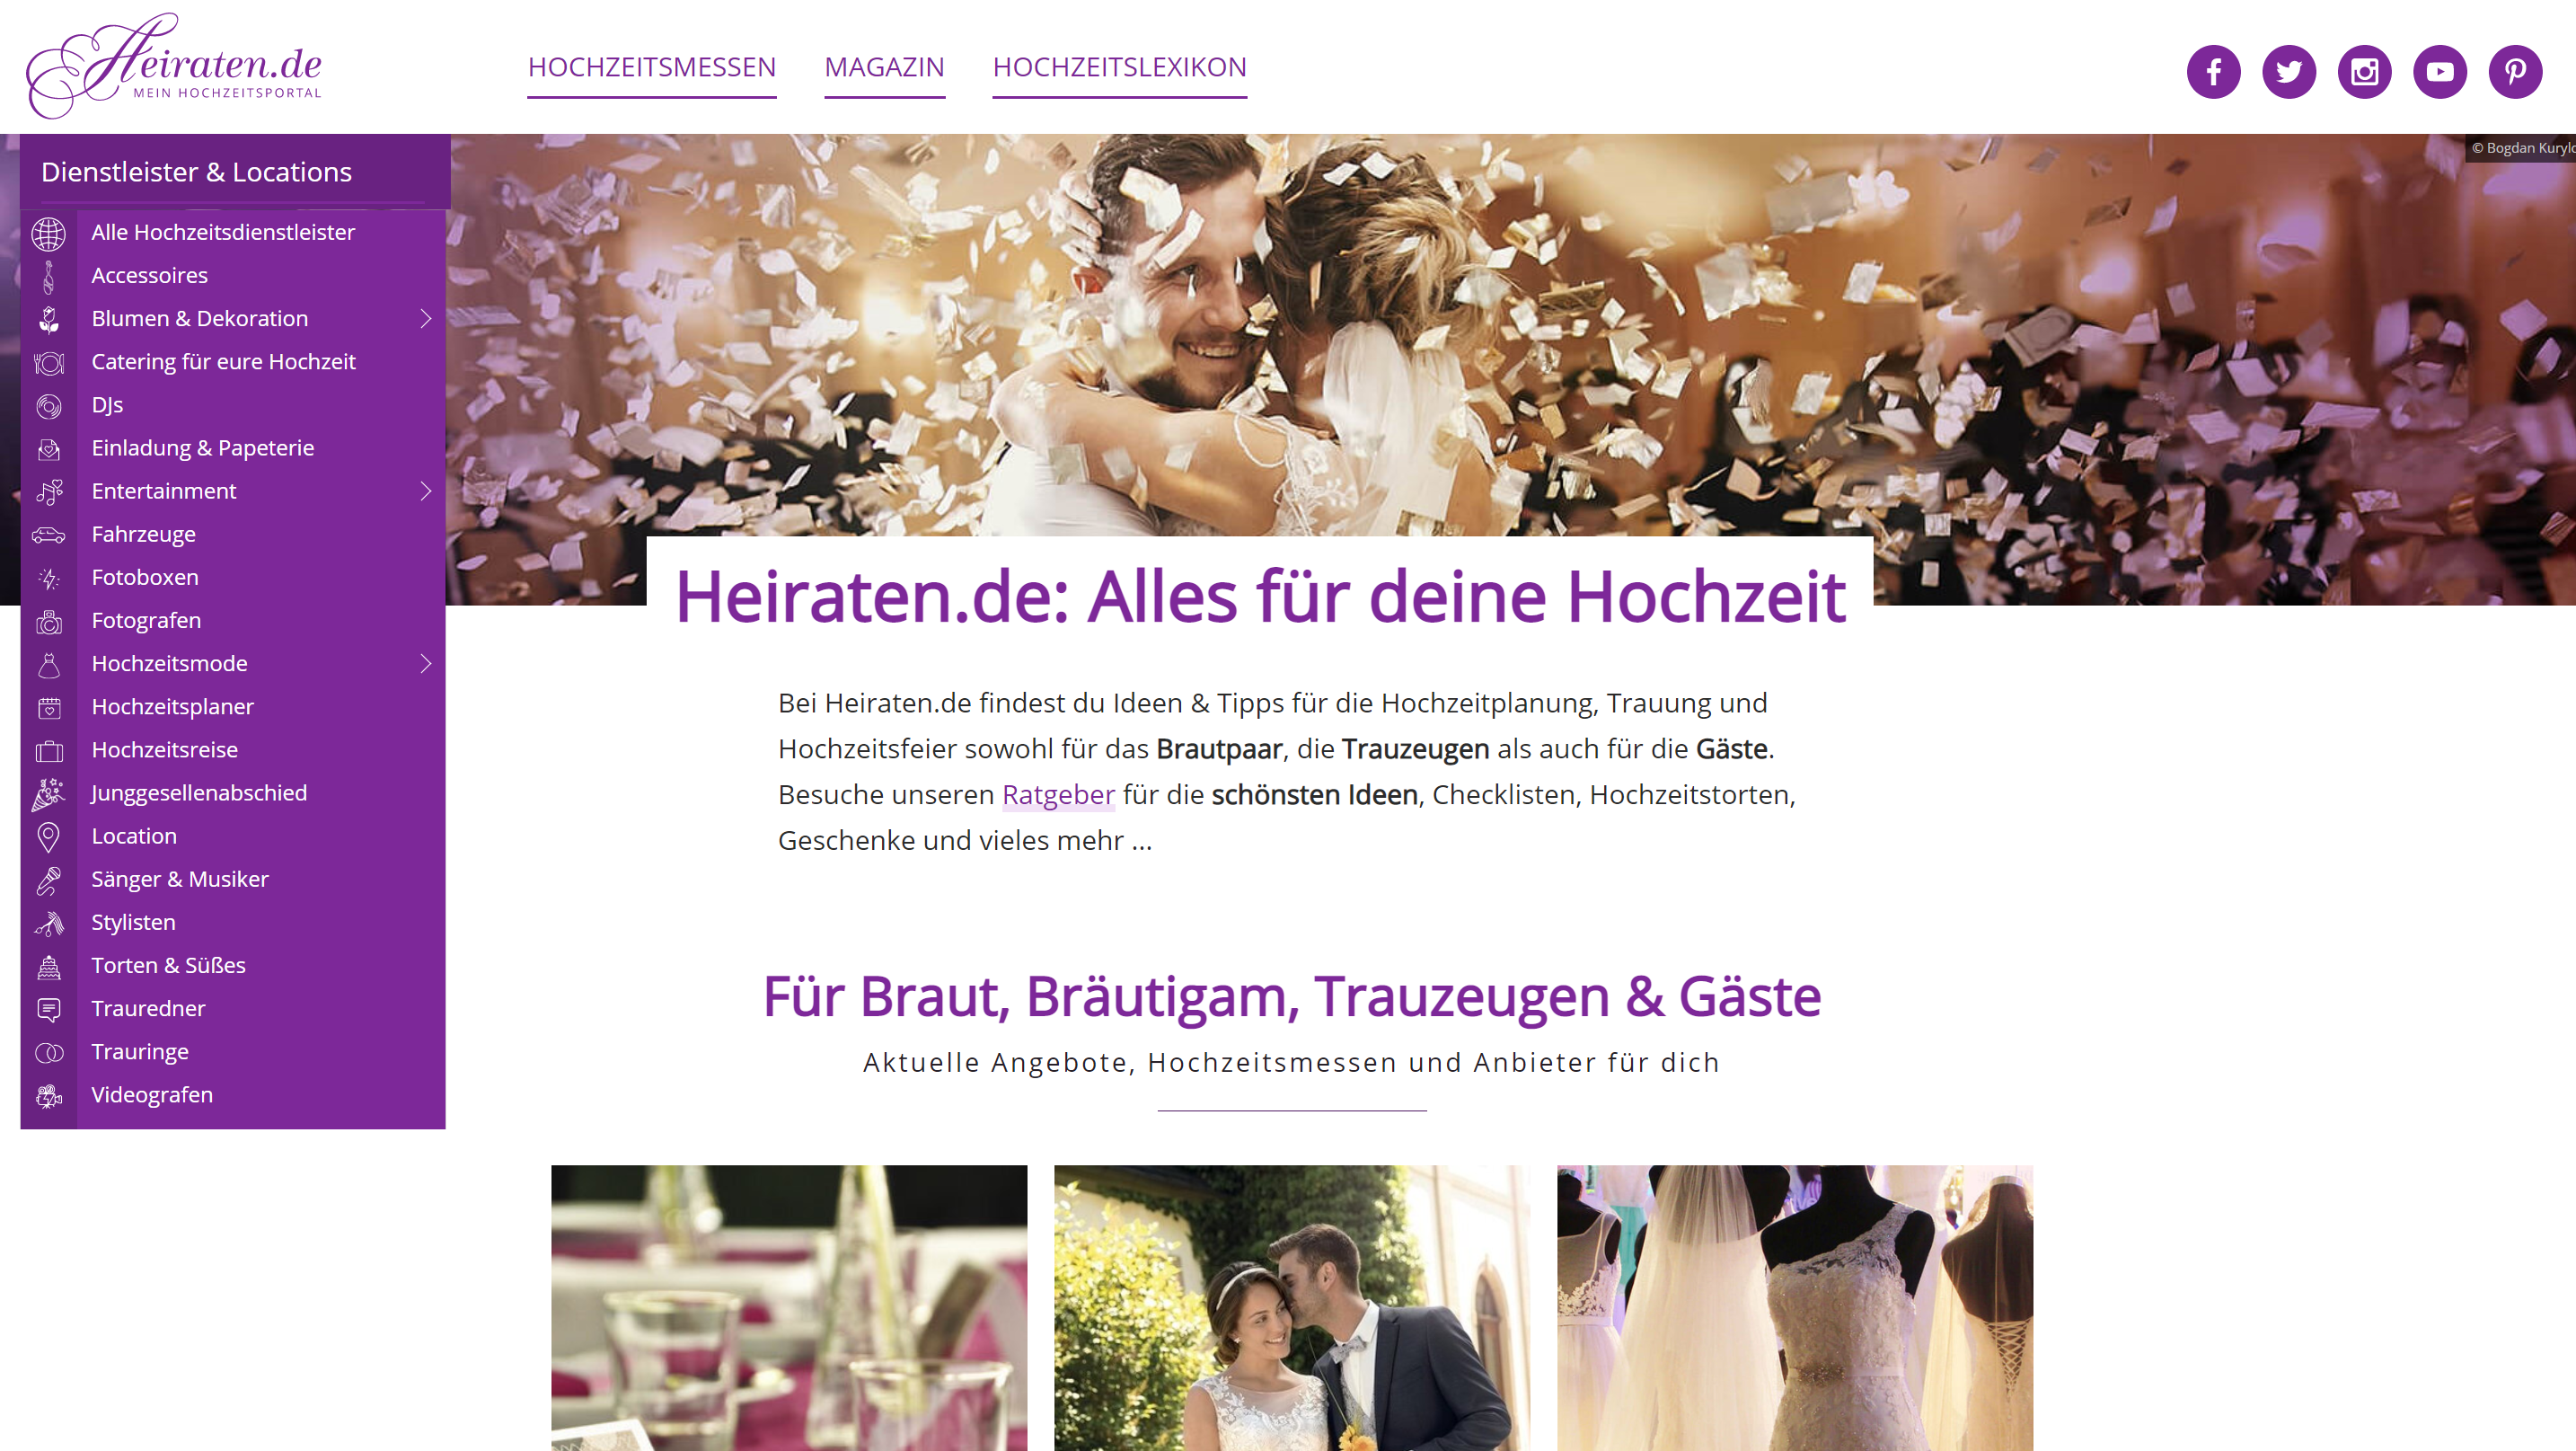 Homepage von Heiraten.de, das Hochzeitsportal